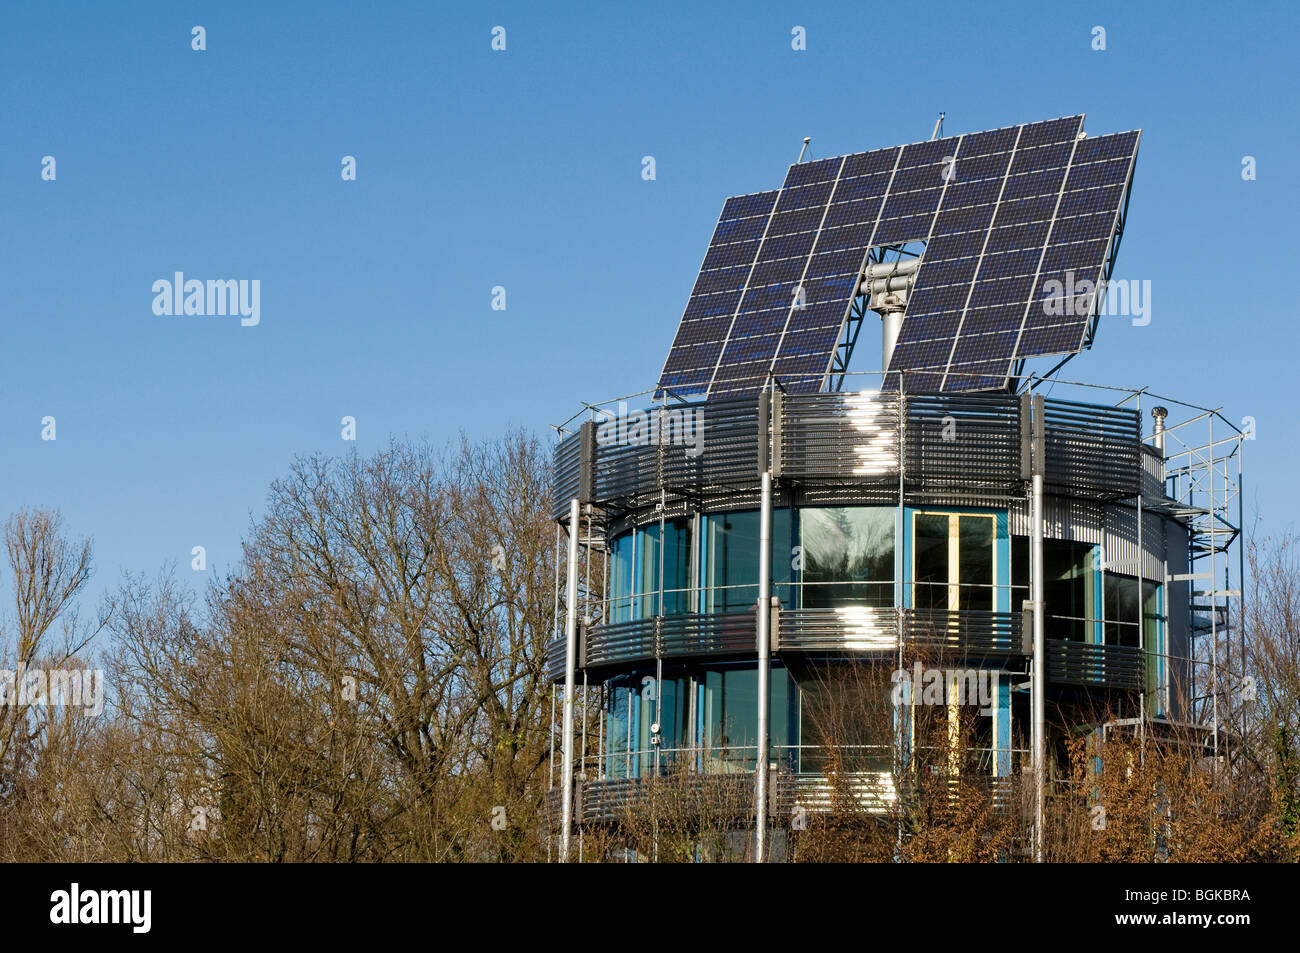 Con techo solar, el sistema ecológico del distrito de Vauban en Friburgo, Baden-Wuerttemberg, Alemania, Europa Foto de stock